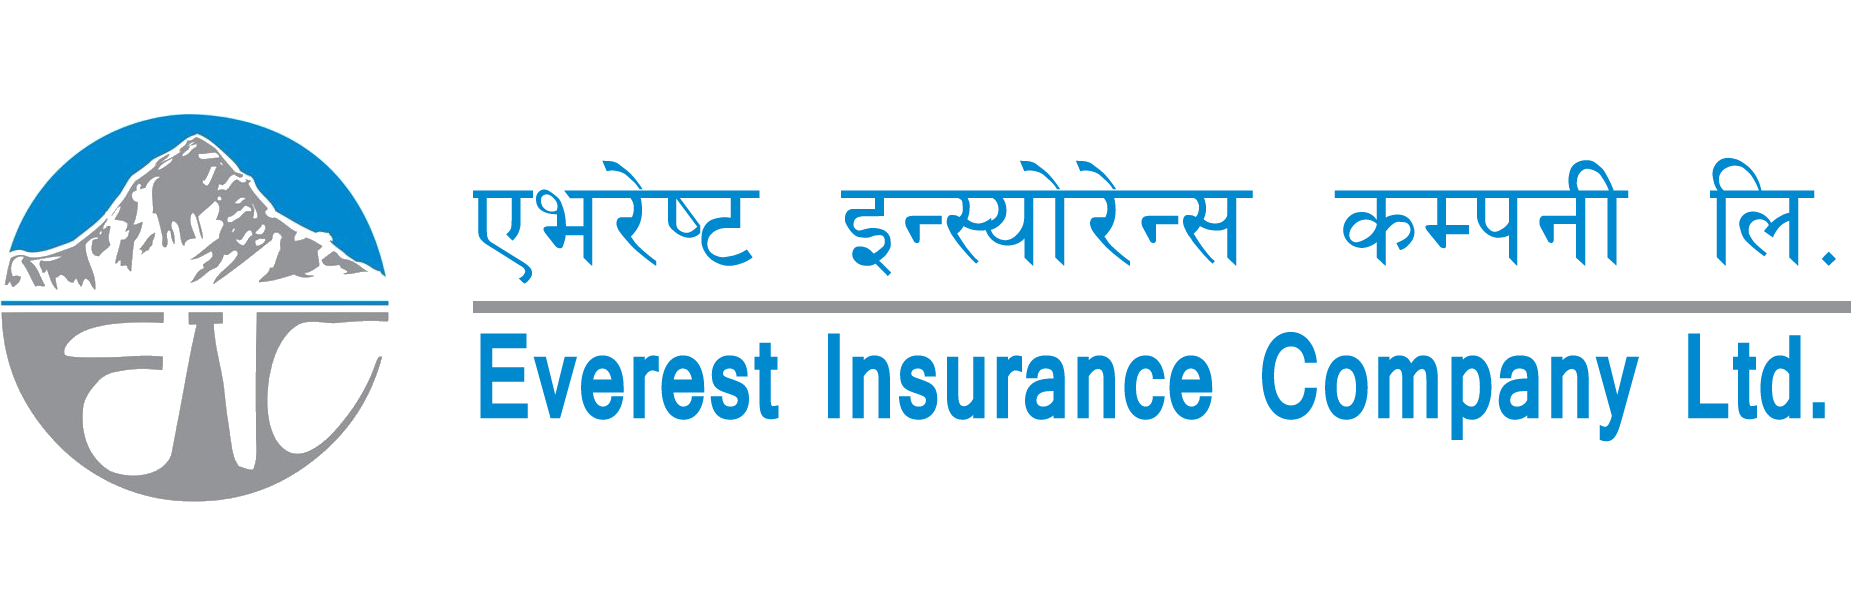 Last day to grasp 10% bonus share of Everest Insurance